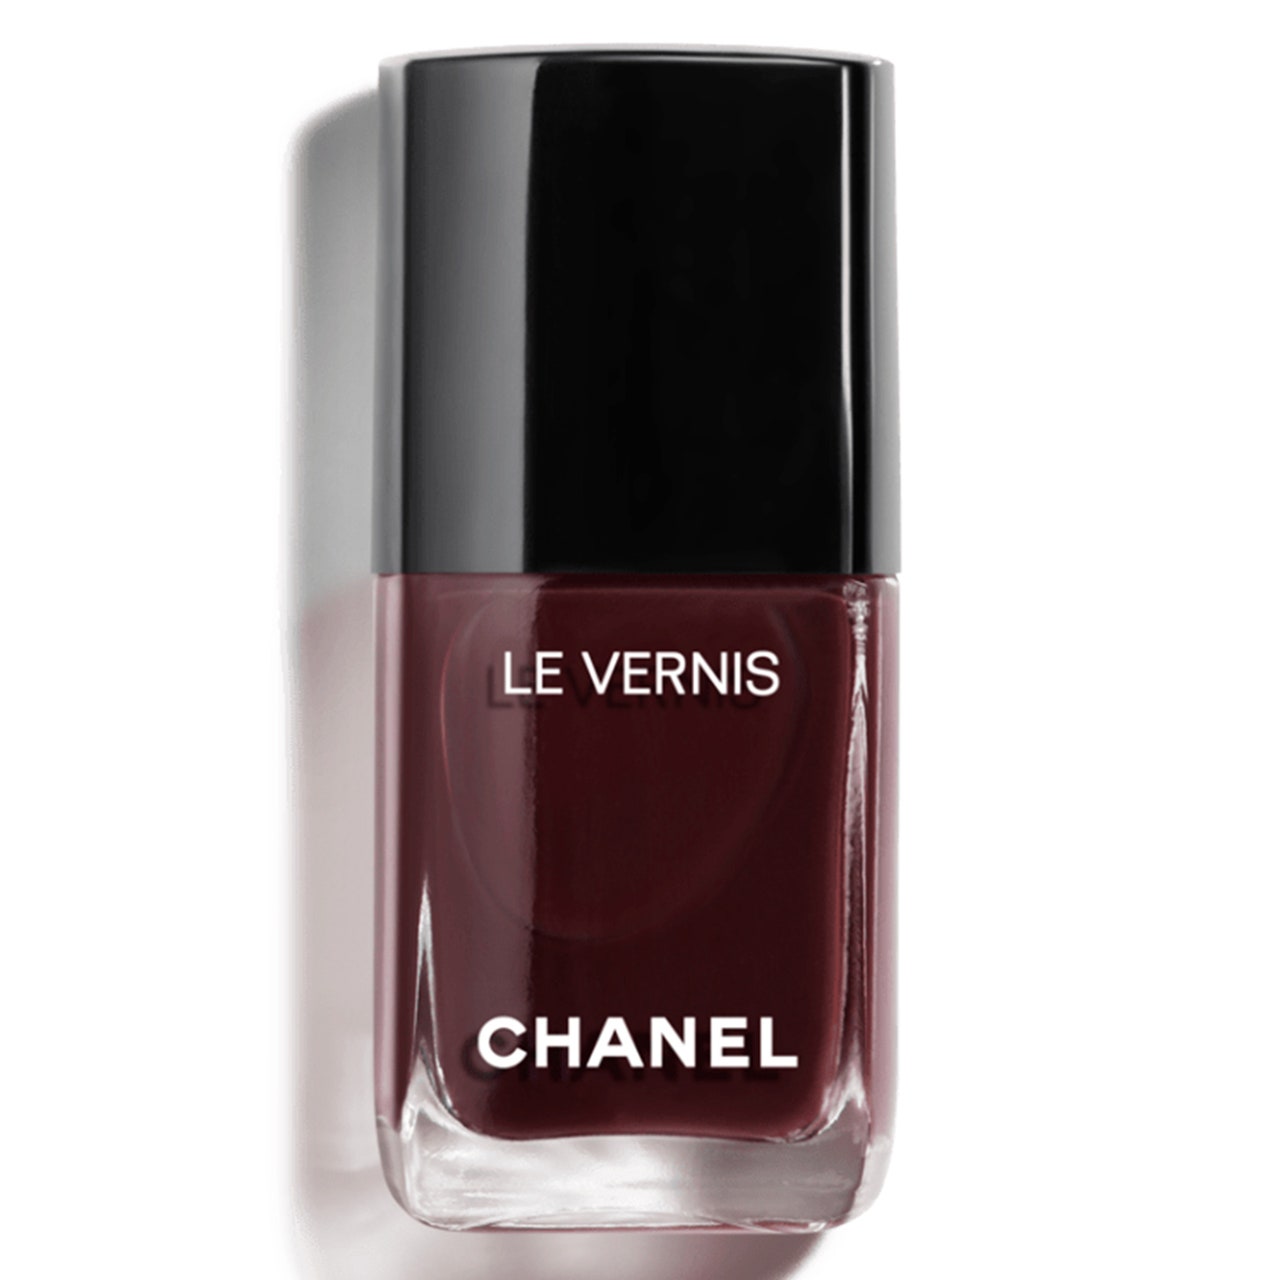 Chanel Le Vernis Longwear Nagellack in Rouge Noir, Flasche Black Cherry Nagellack mit schwarzer Kappe auf weißem Hintergrund